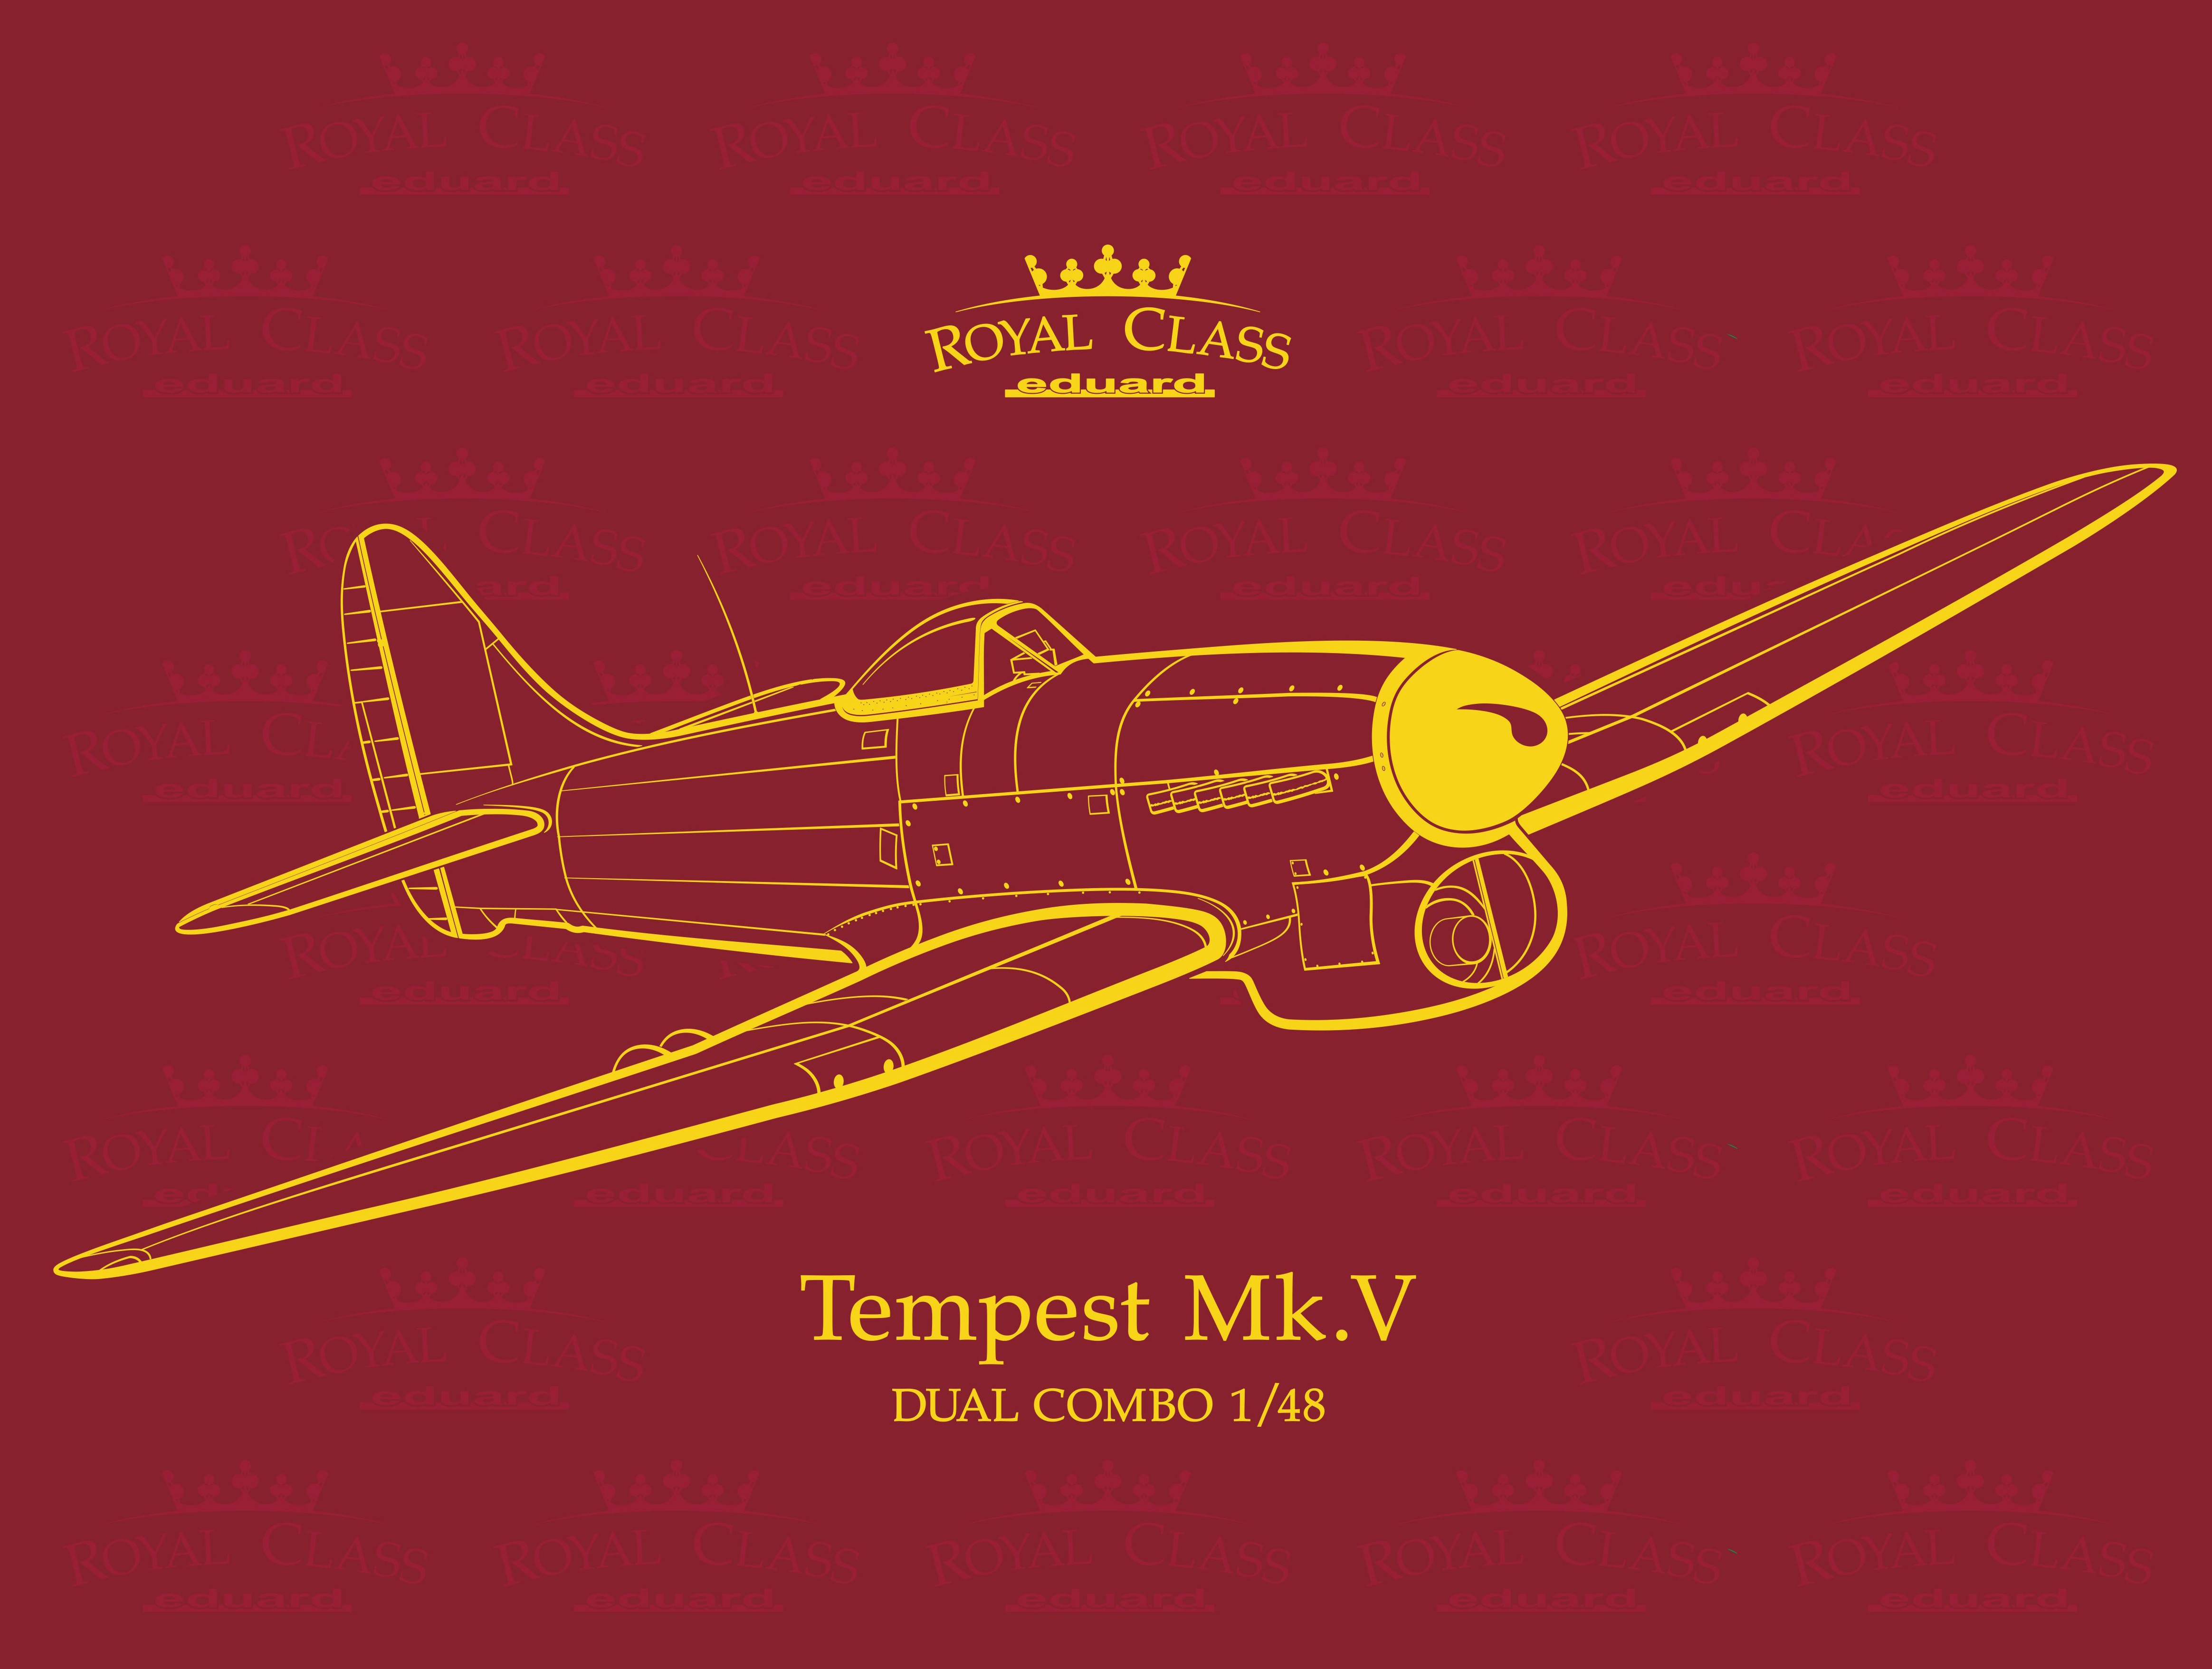 Maquette Eduard Hawker Tempest Mk.V Kit édition Royal Class de l'avion